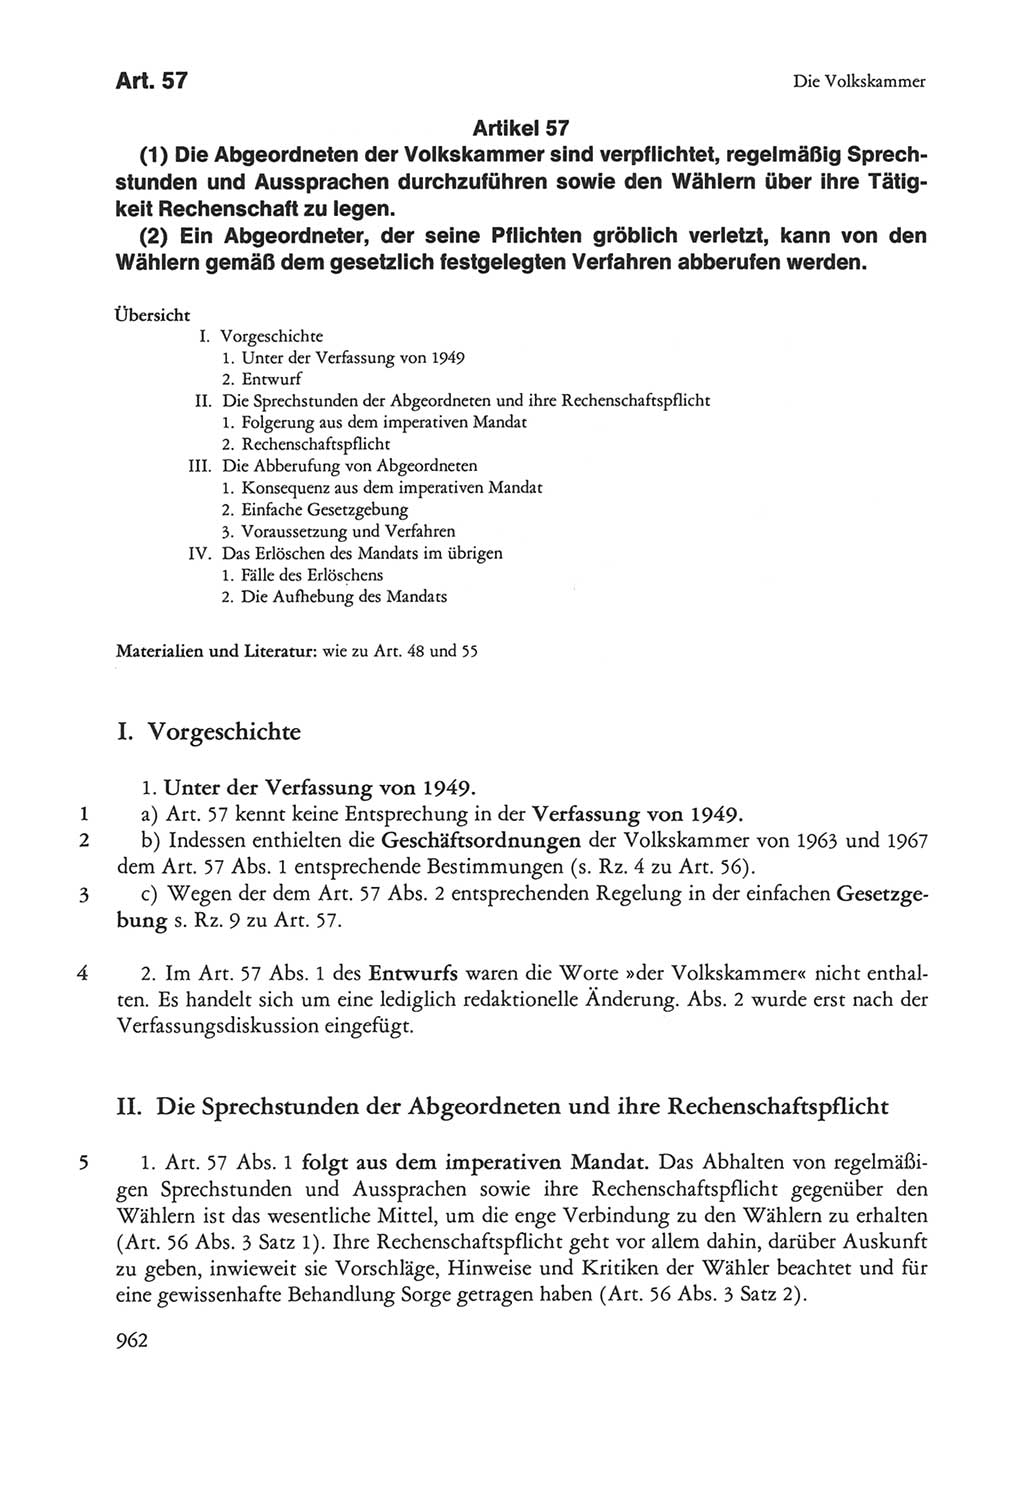 Die sozialistische Verfassung der Deutschen Demokratischen Republik (DDR), Kommentar 1982, Seite 962 (Soz. Verf. DDR Komm. 1982, S. 962)